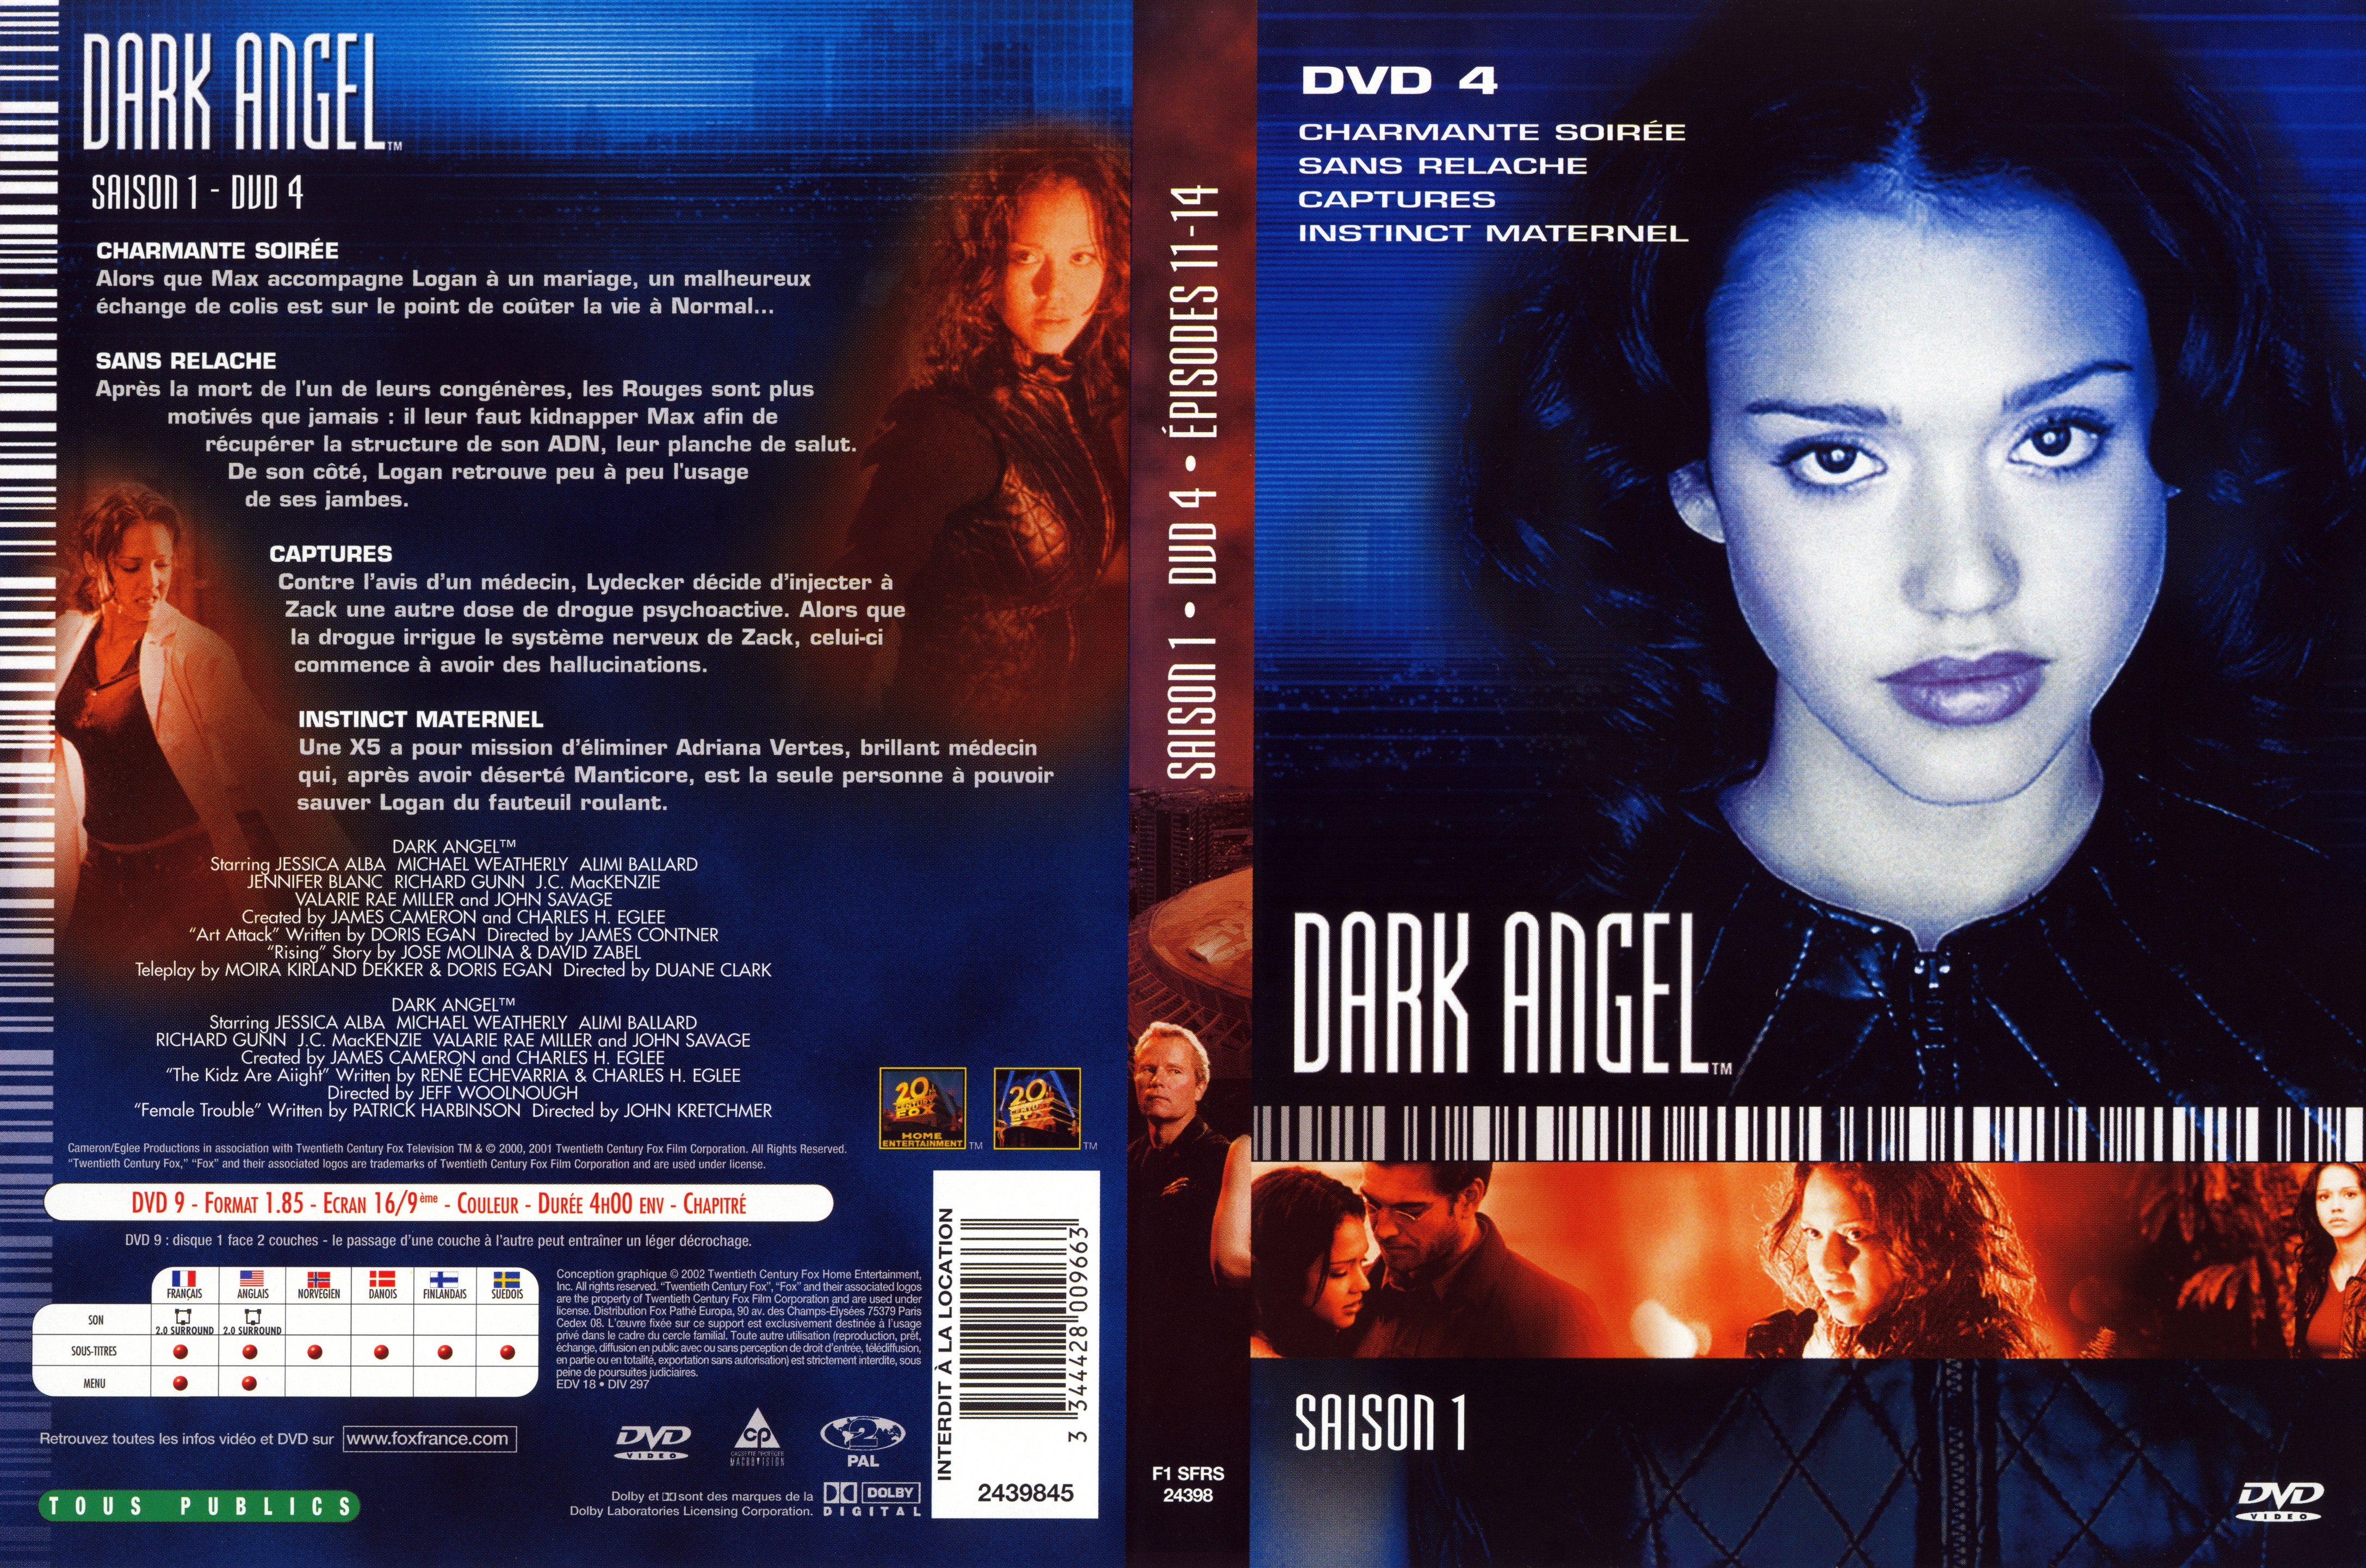 Jaquette DVD Dark Angel Saison 1 DVD 4